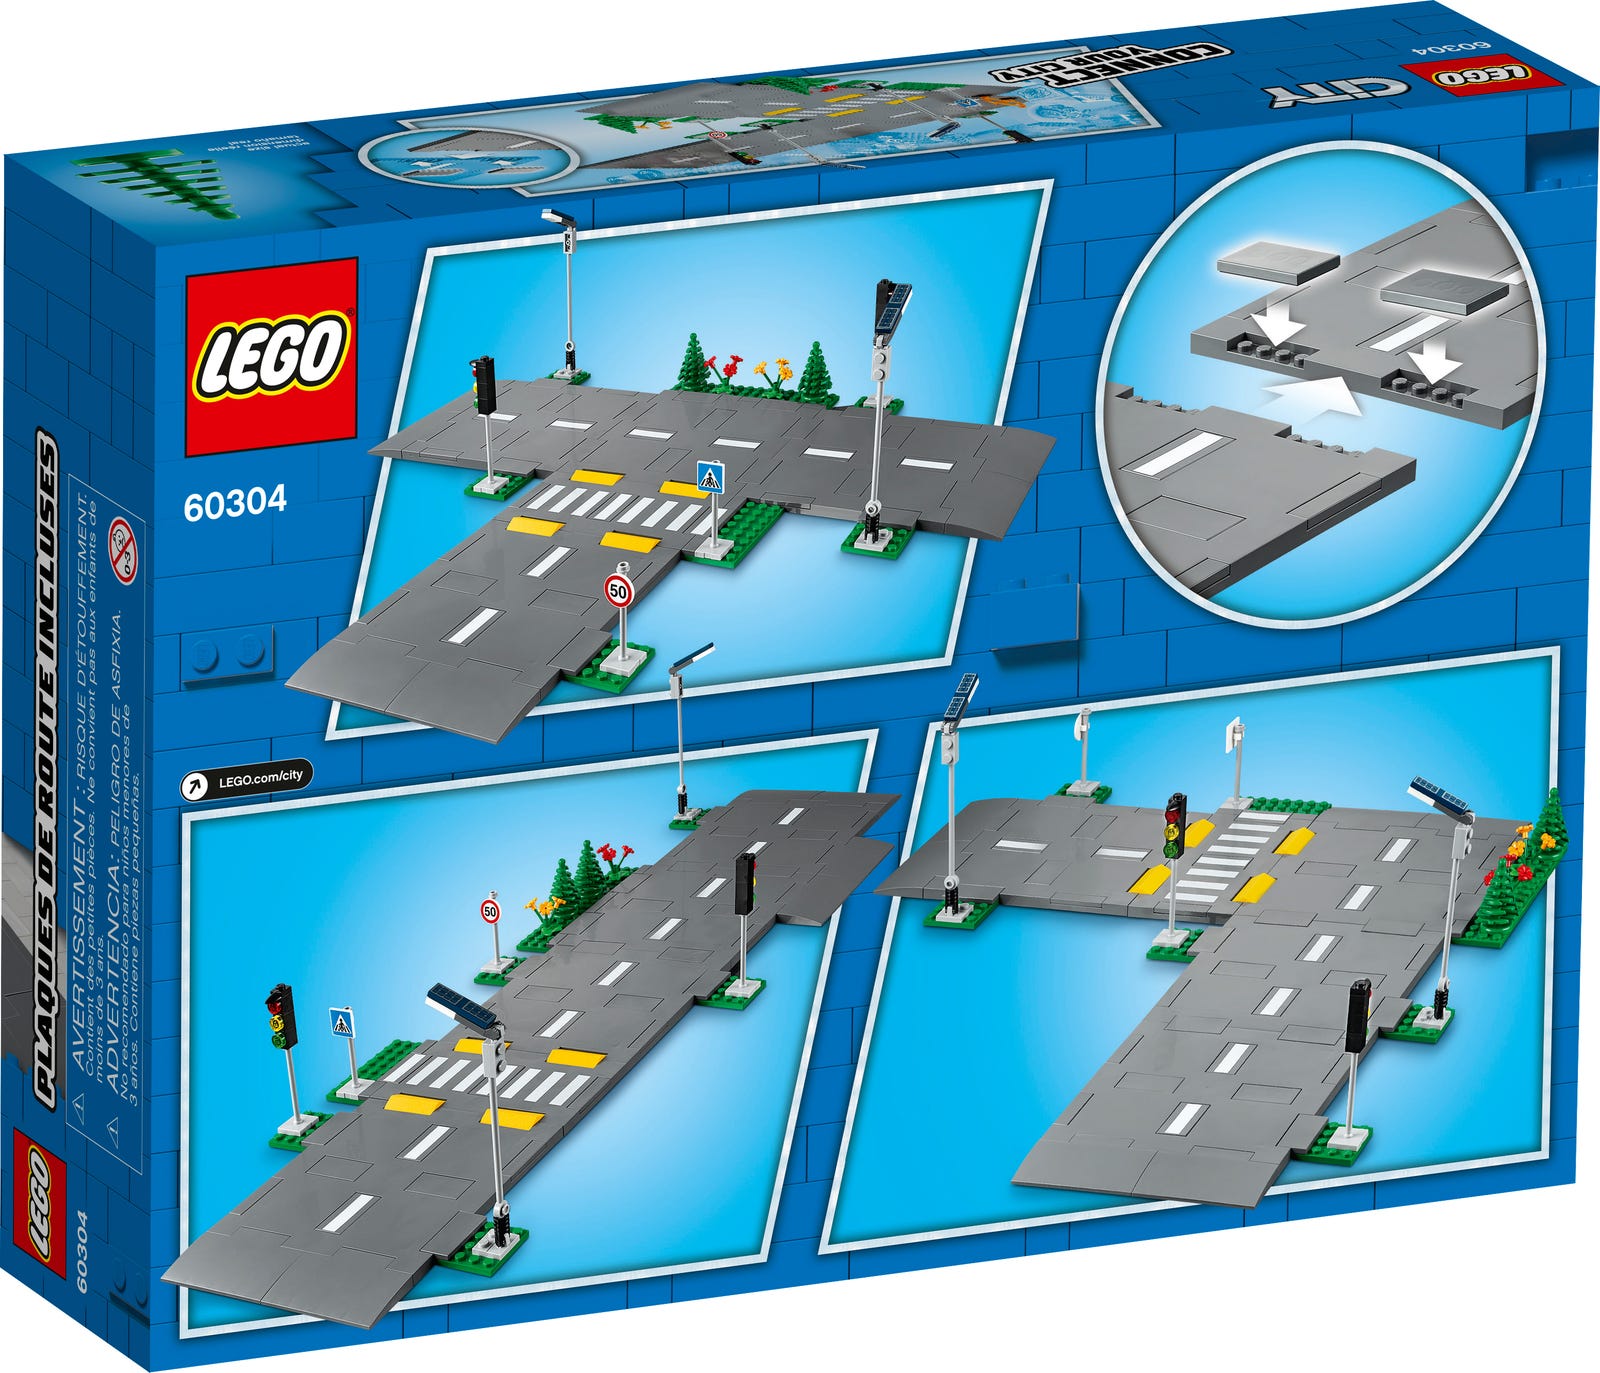 LEGO® City 60304 - Straßenkreuzung mit Ampeln - Box Back